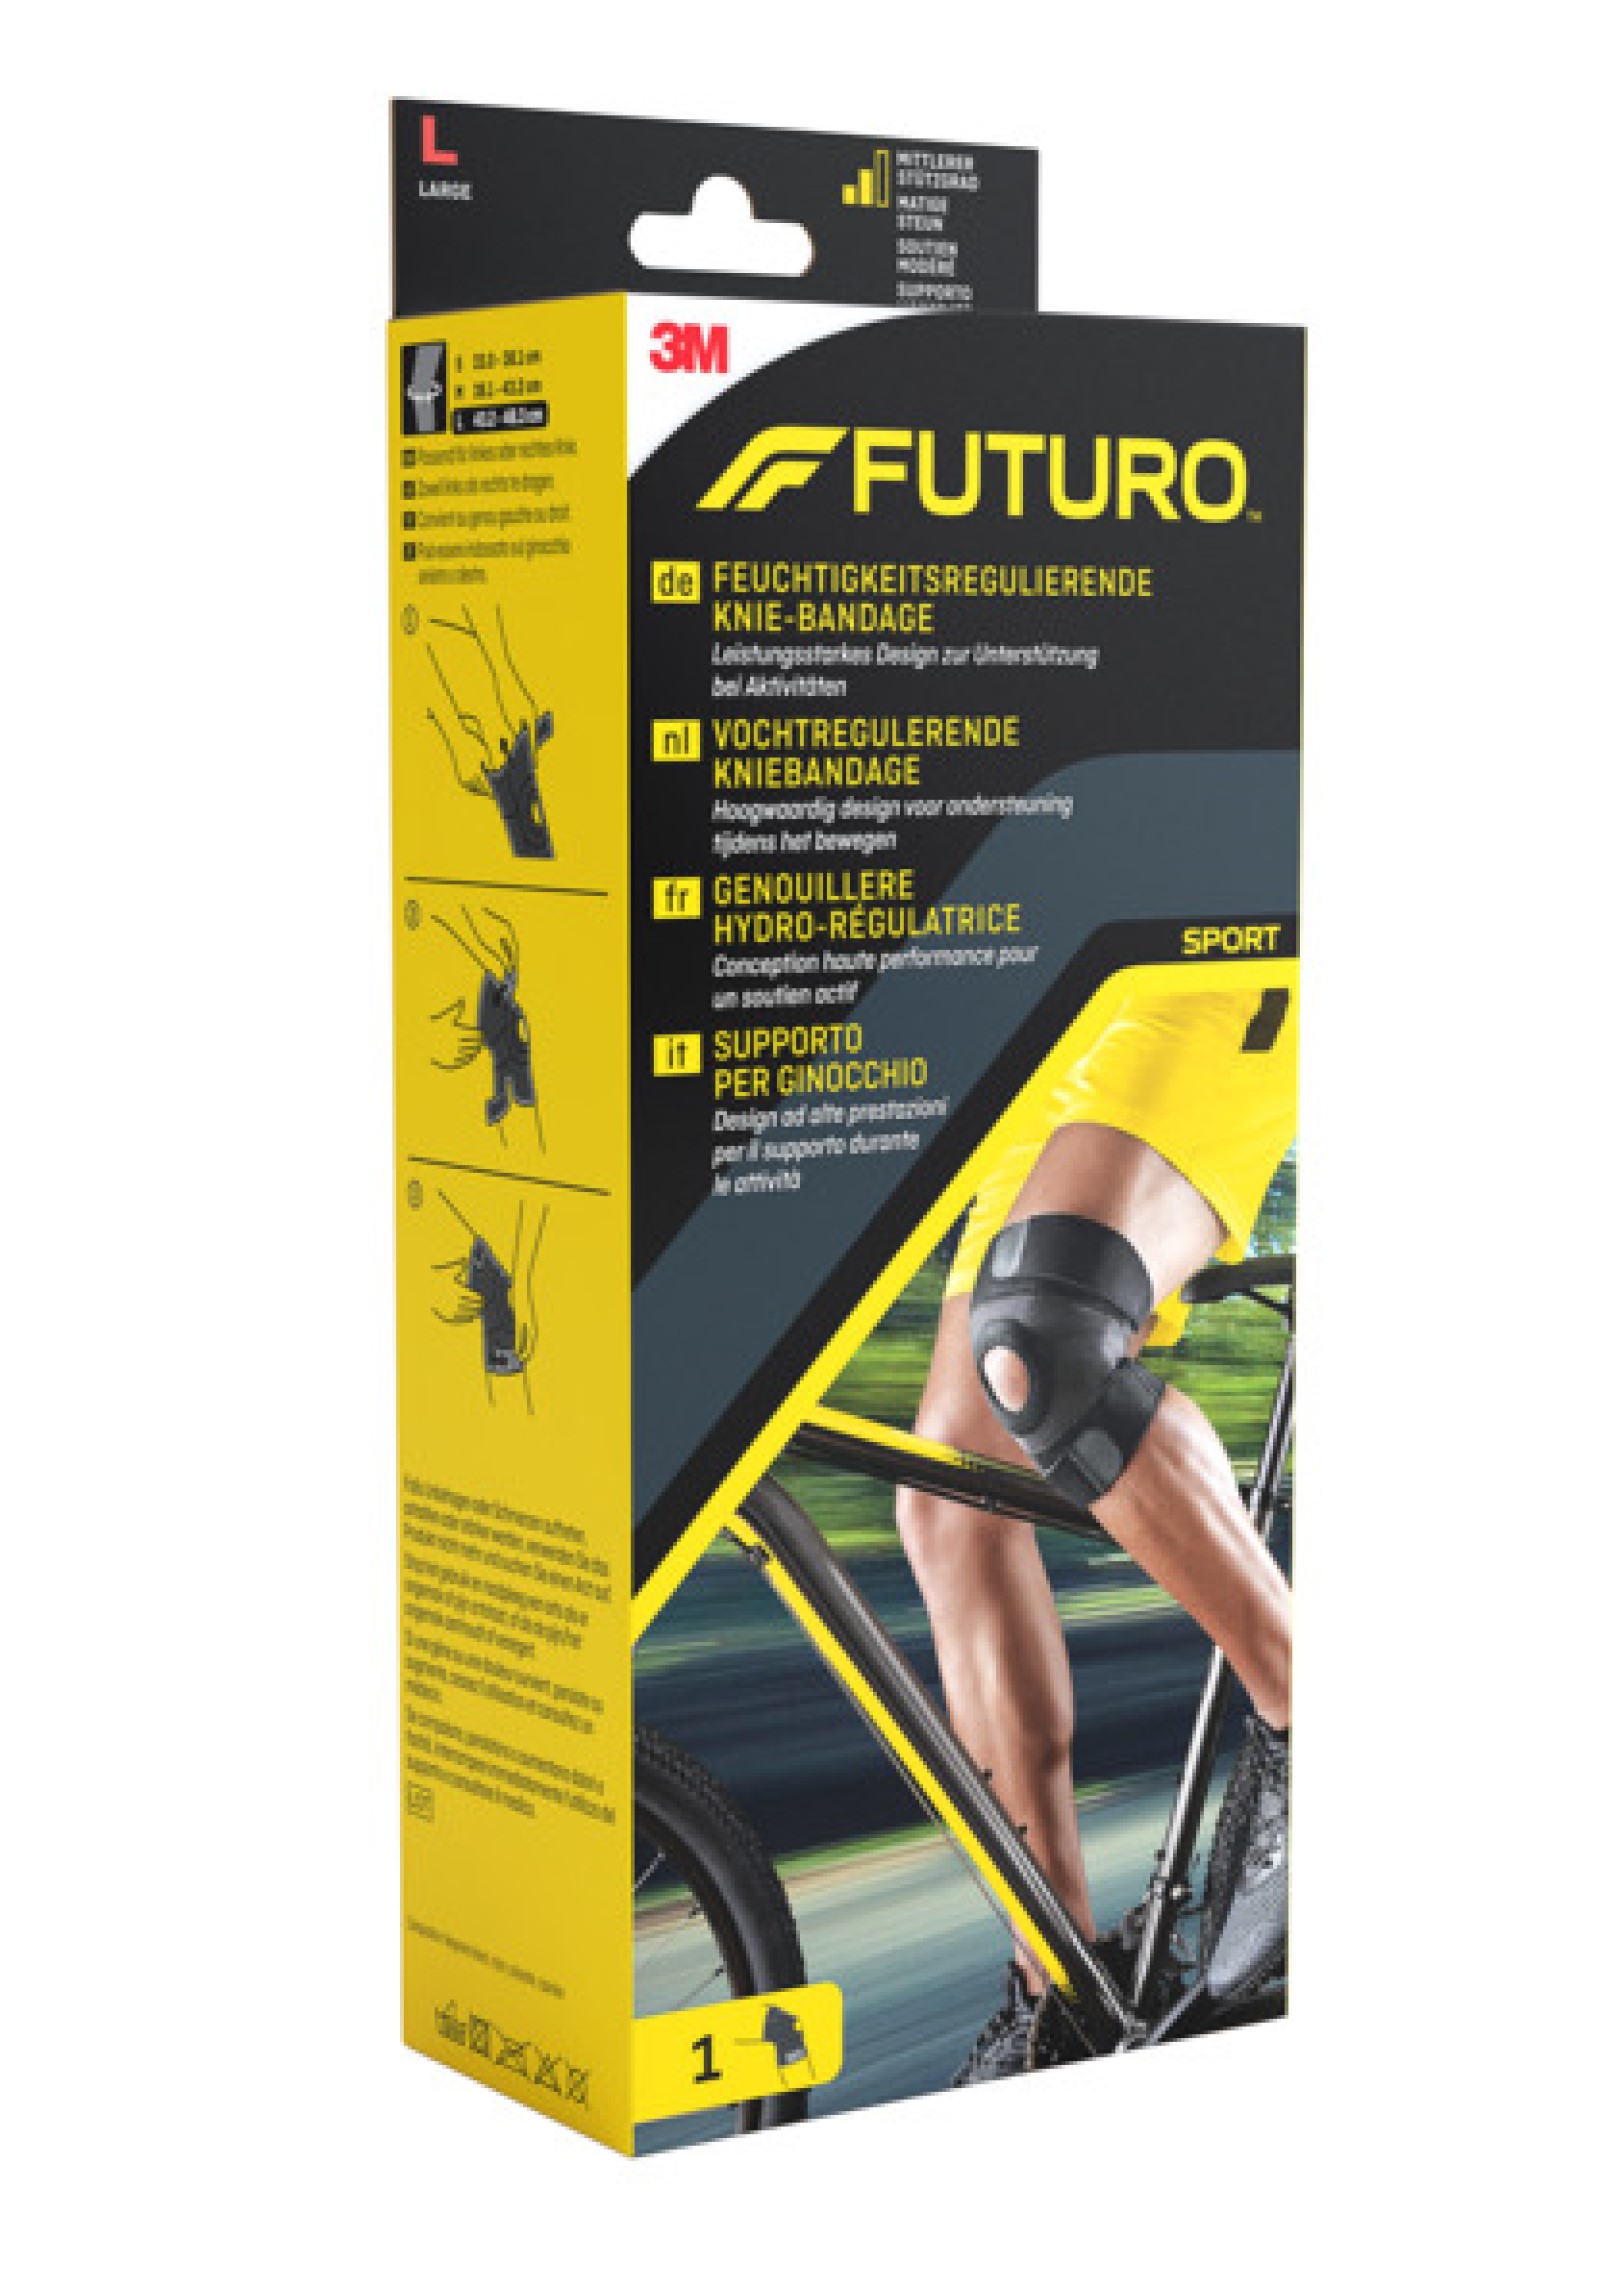 FUTURO™ Feuchtigkeitsregulierende Knie-Bandage 45697, L SPORT (43.2 - 48.3 cm)